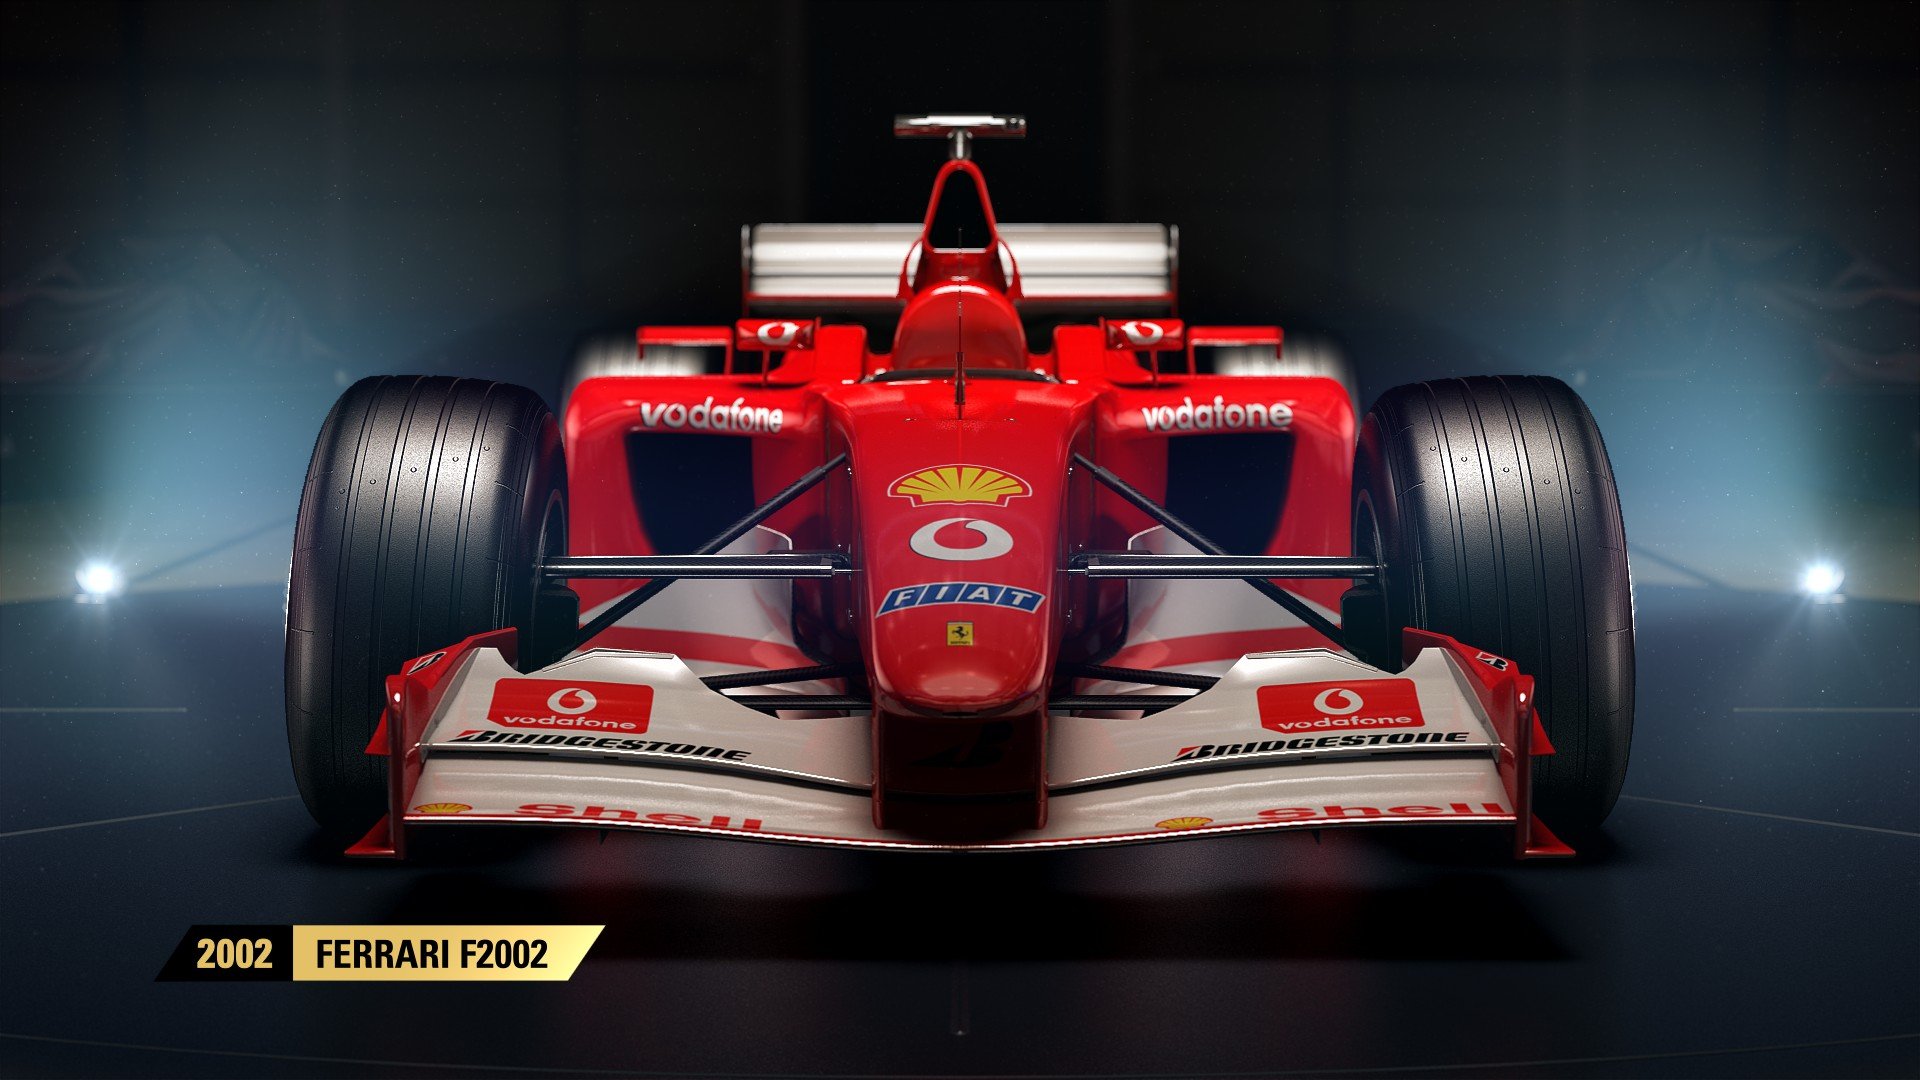 F1 2017 announce image 2002 Ferrari F2002